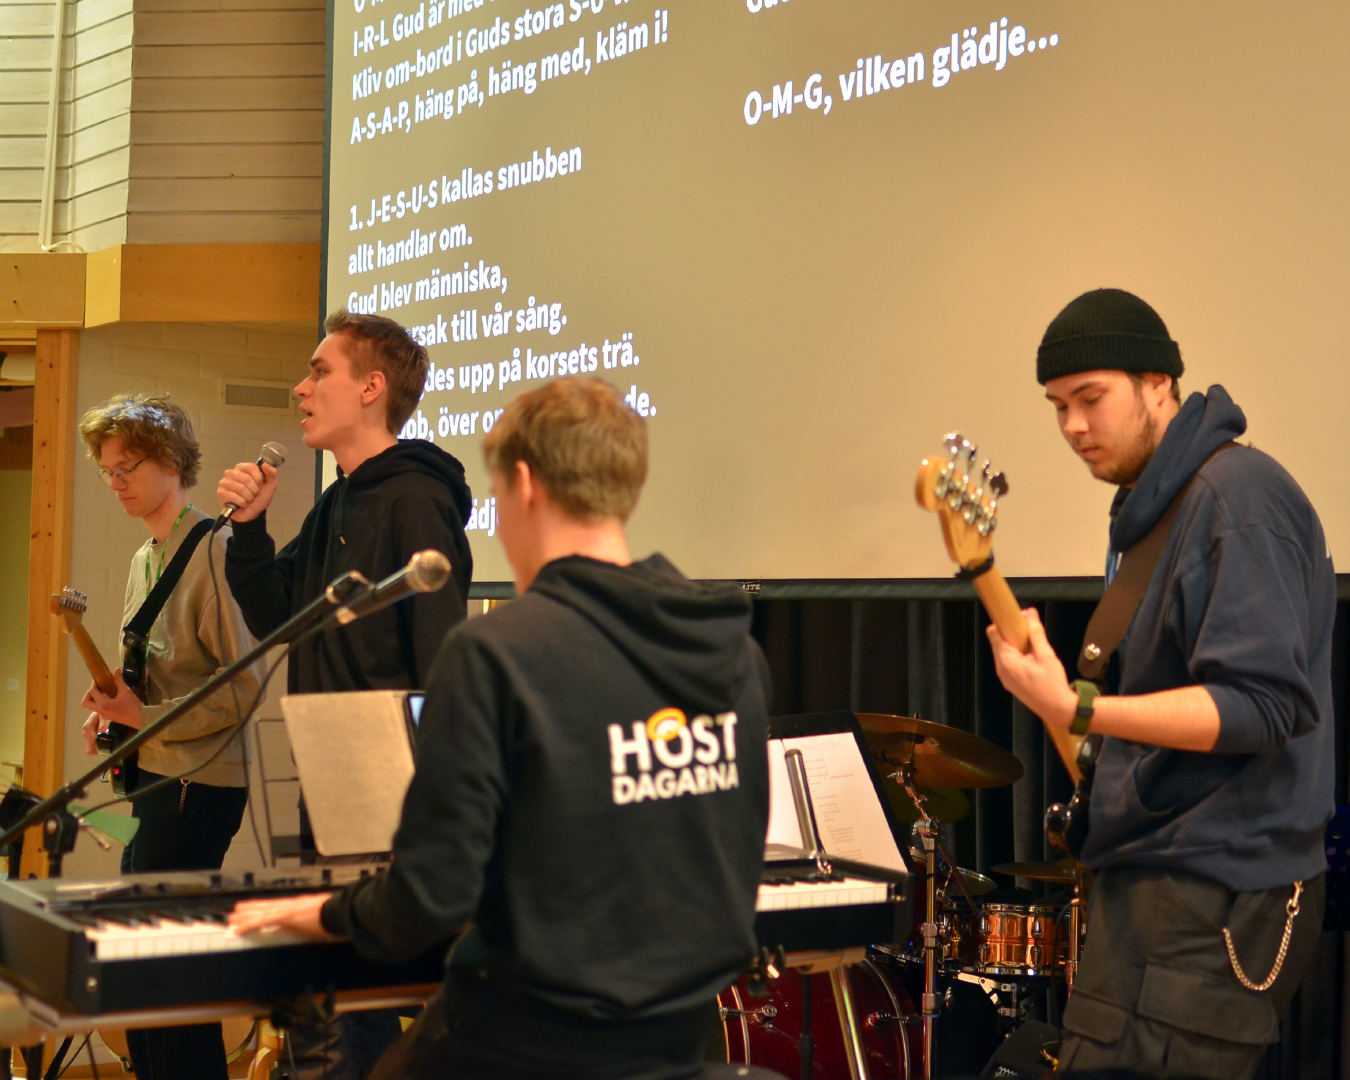 Fyra unga män i 20-års ålder spelar elgitarr, bas, piano och sjunger. Sångtexten syns på en vit skärm i bakgrunden.